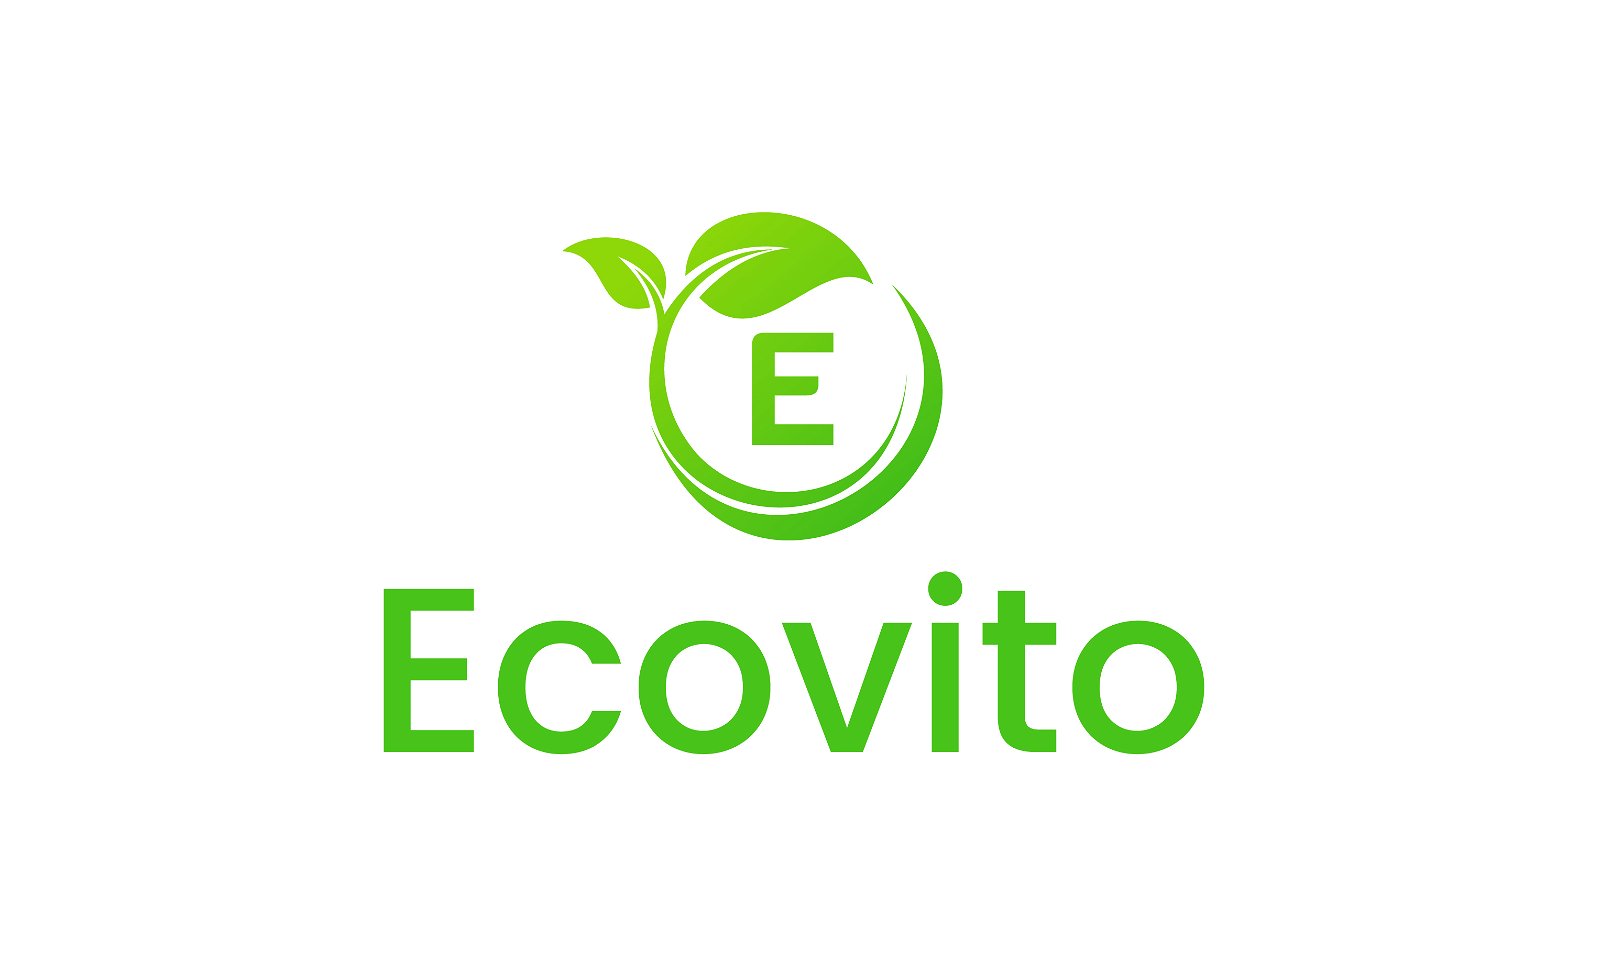 Ecovito.com - Creative brandable domain for sale